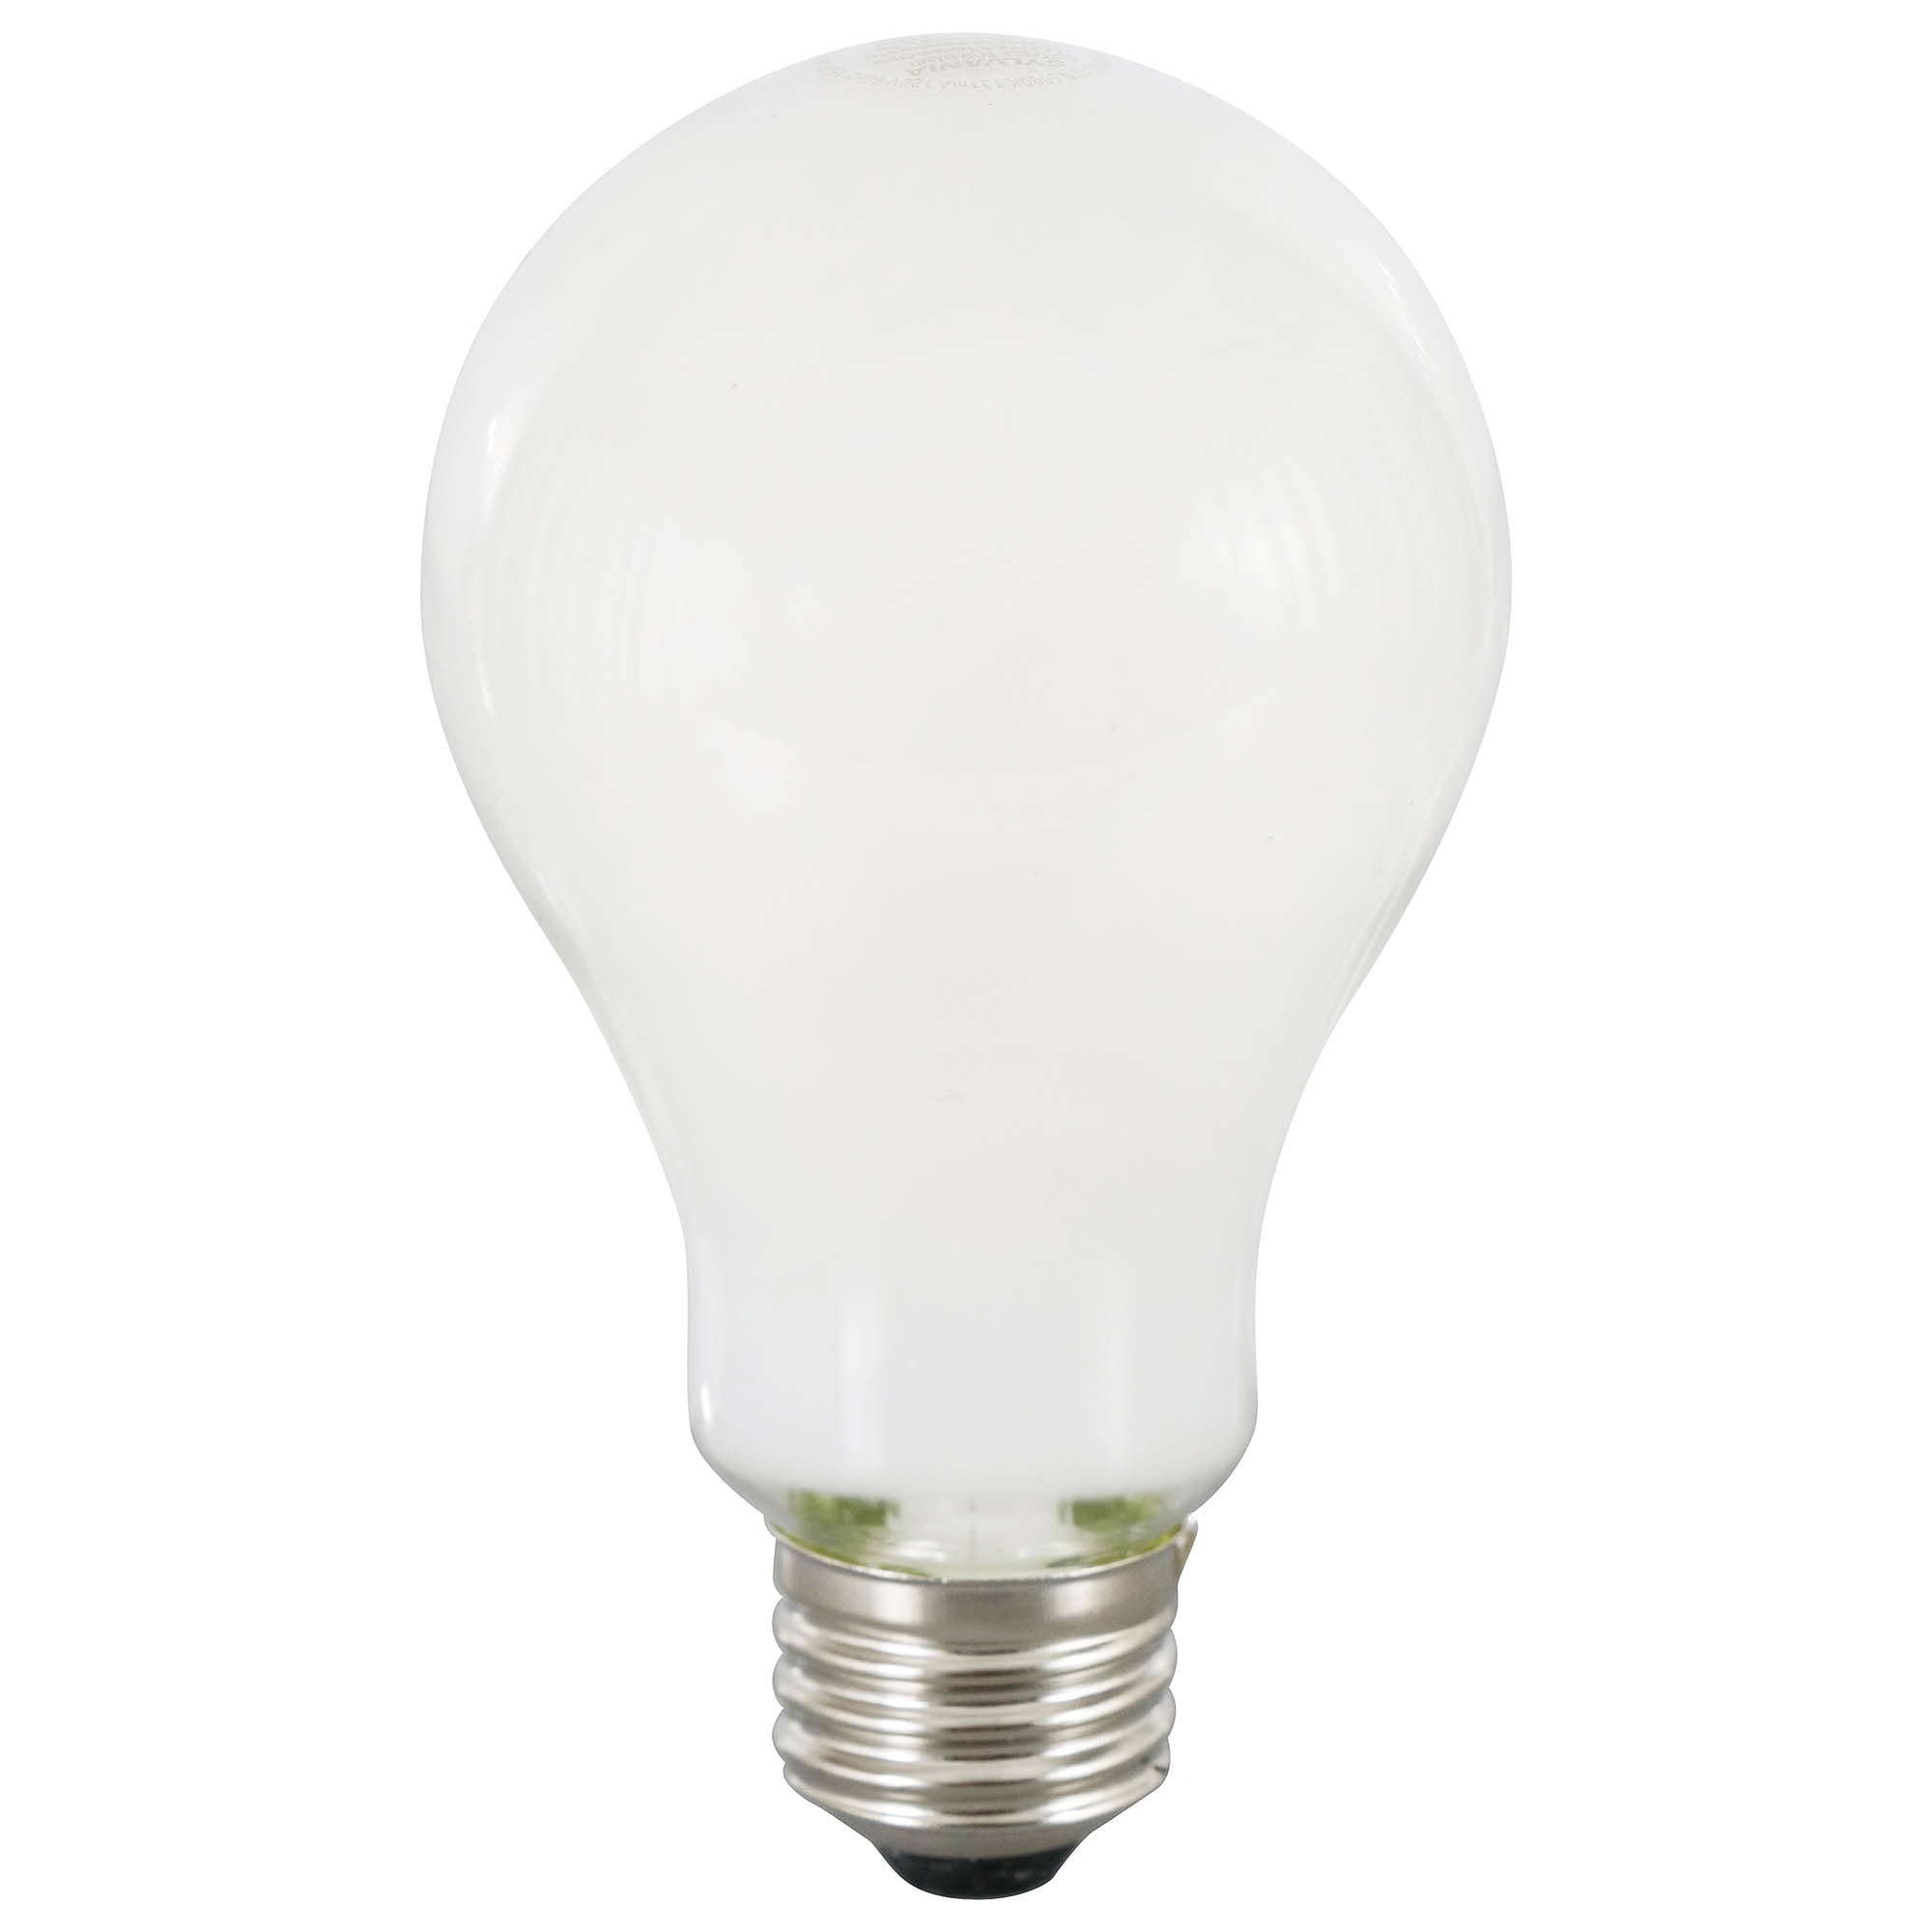 Sylvania LED A21 Reduced Eye Strain Light Bulb, 100 Watt,Dim,Day 